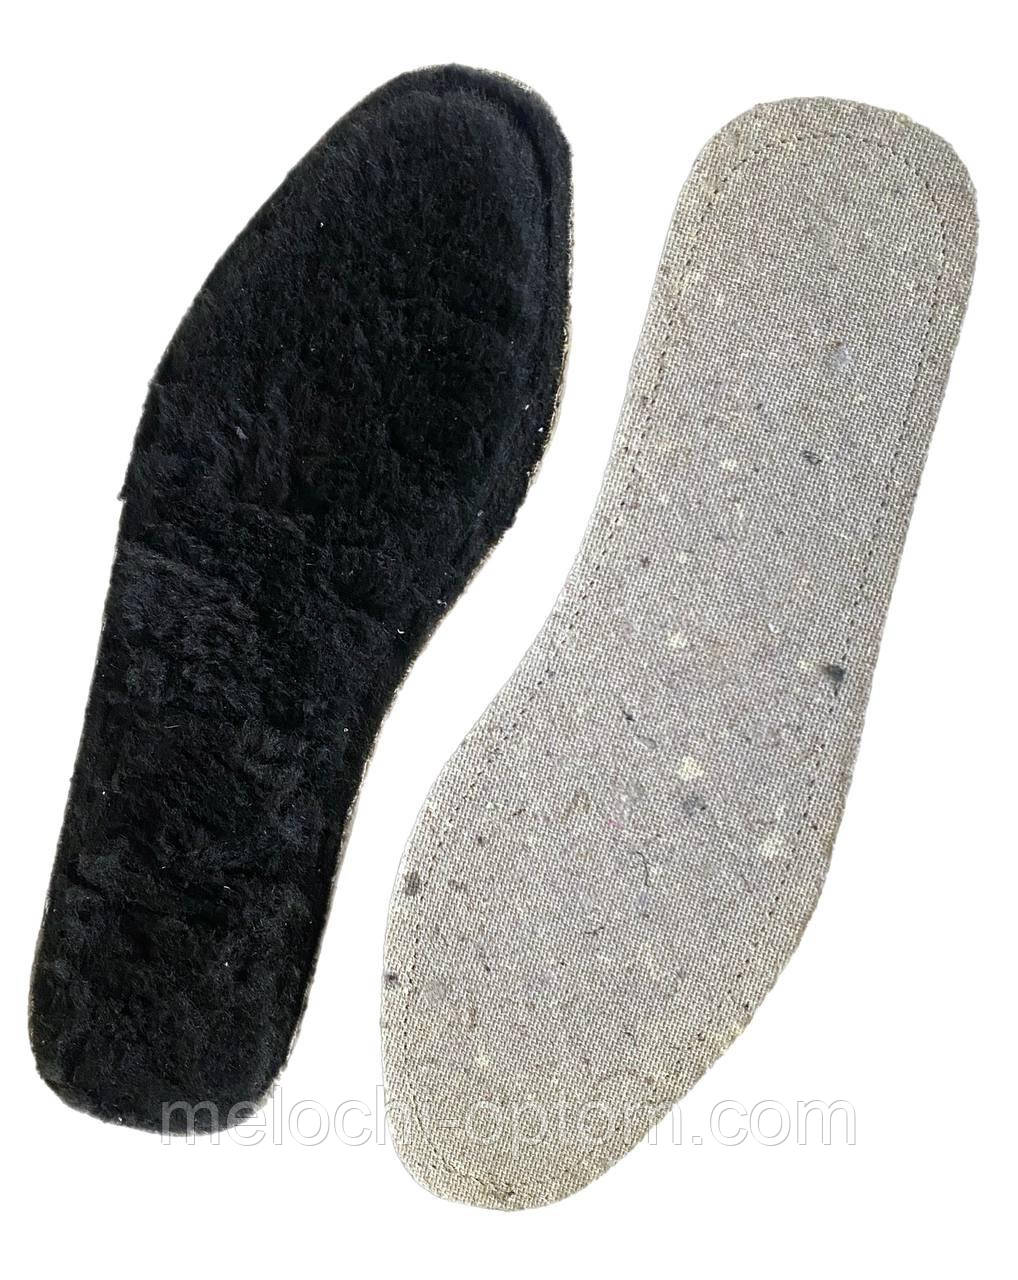 Устілки для взуття ШЕРСТЬ 100% на кожкартоне, Чорні устілки зимові